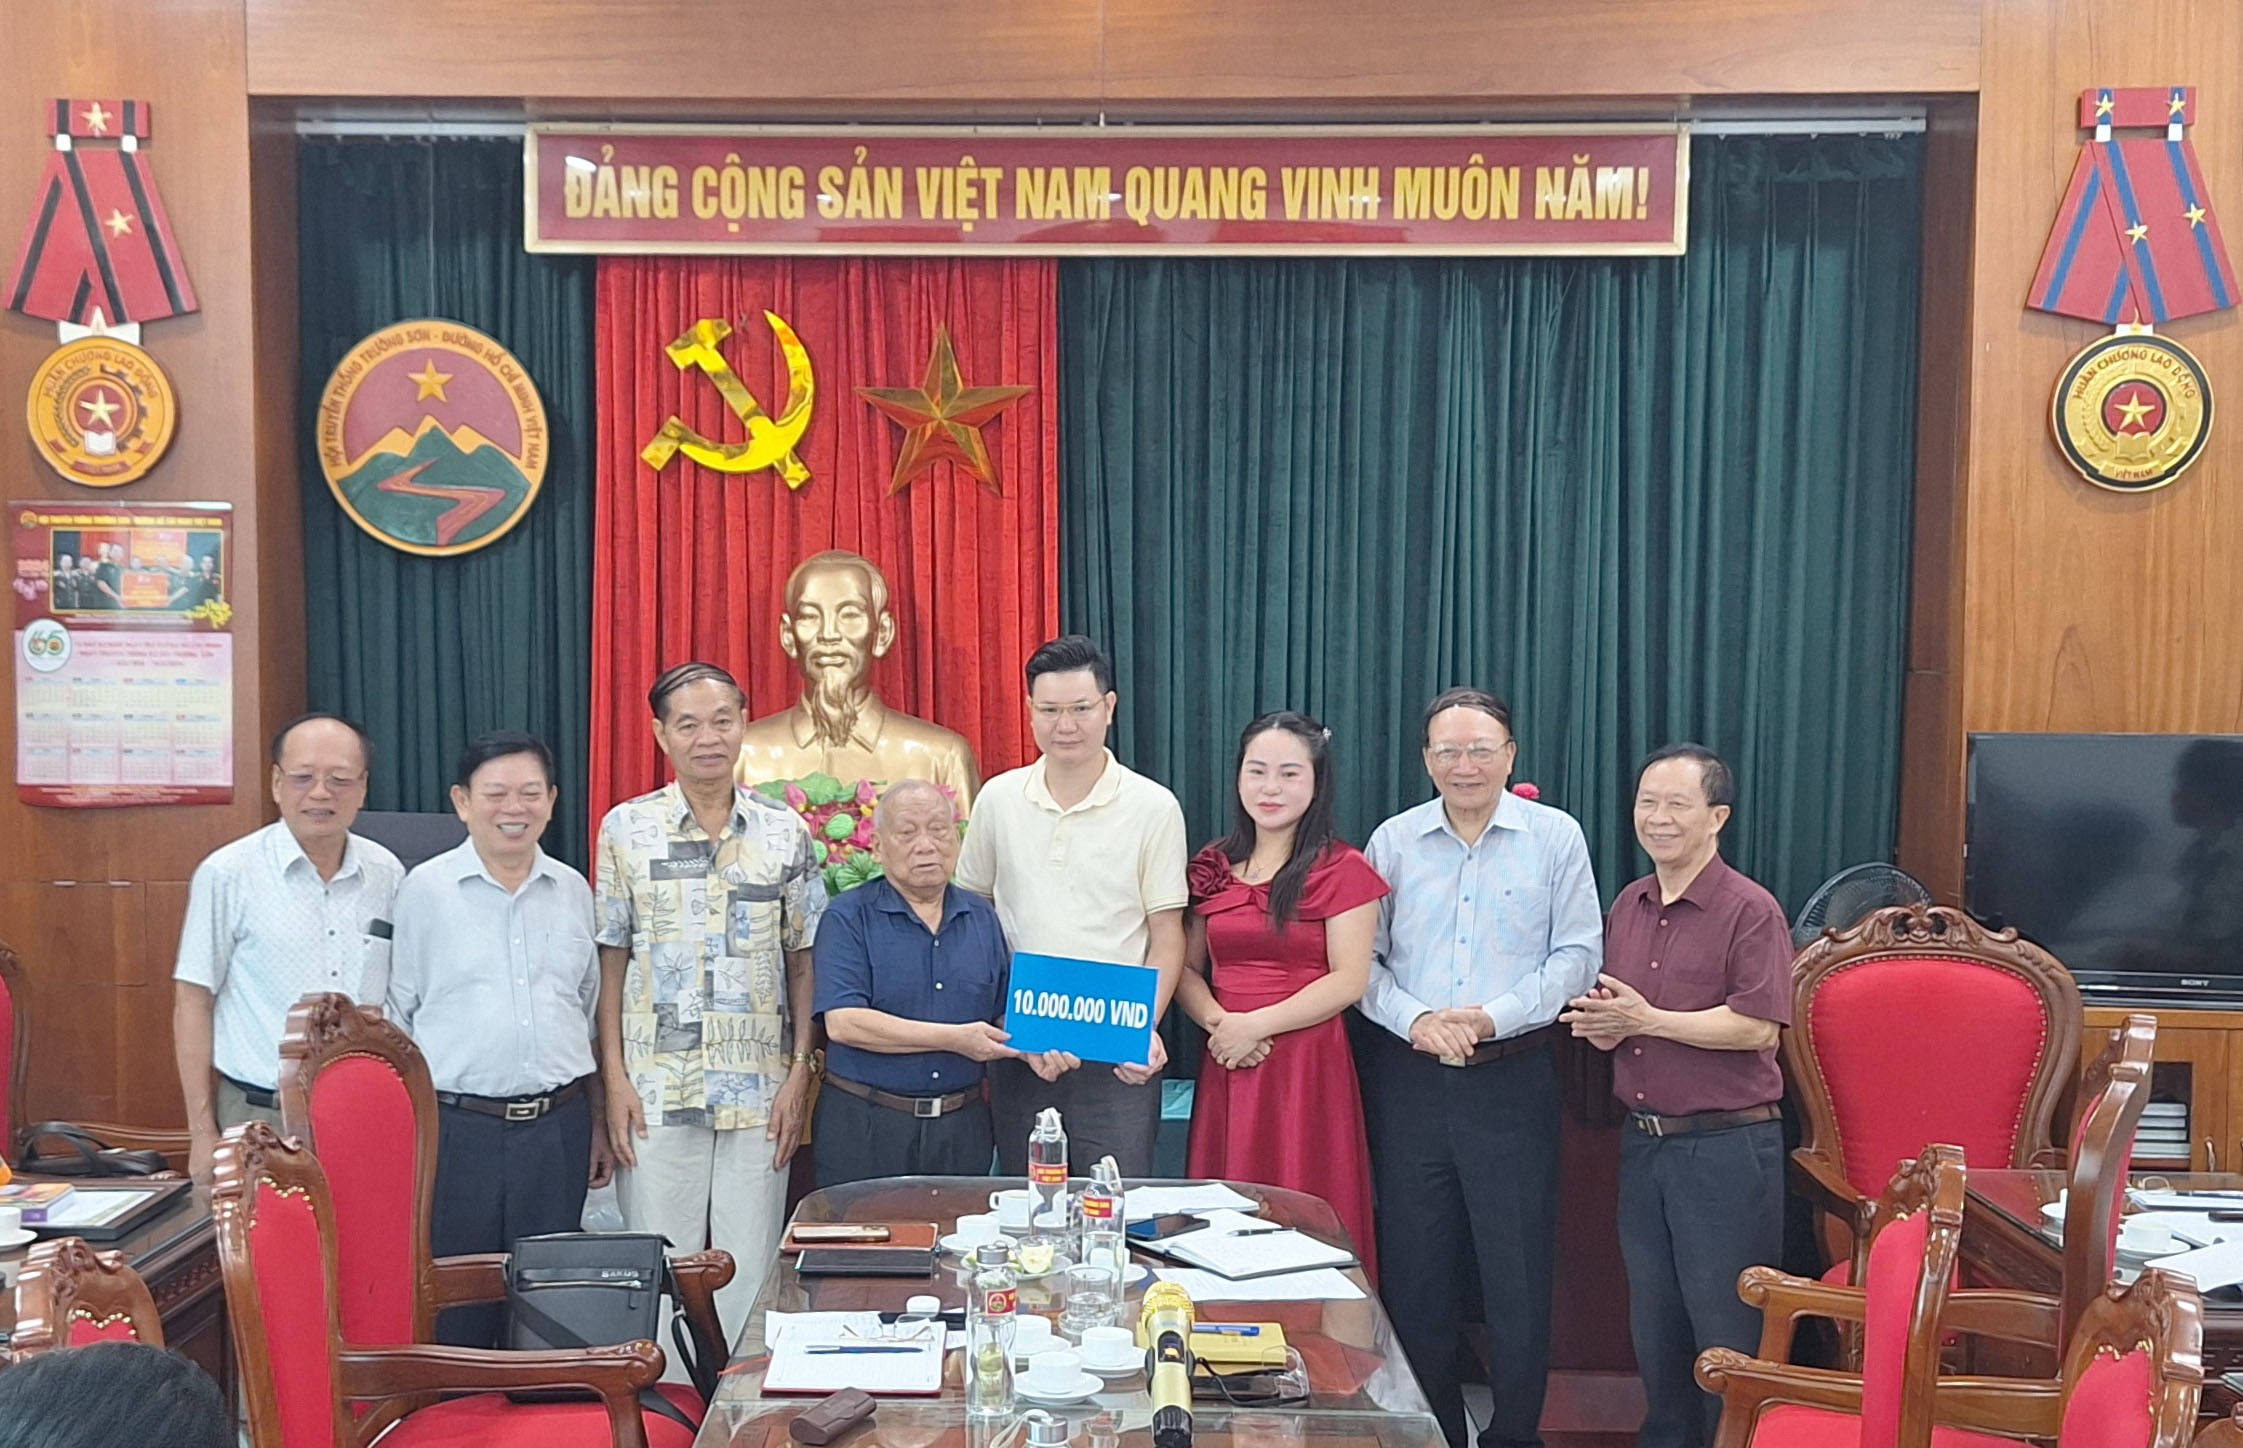 Gia đình doanh nhân Nguyễn Văn Thân và Trần Thị Cúc  thăm Hội Trường Sơn Việt Nam  